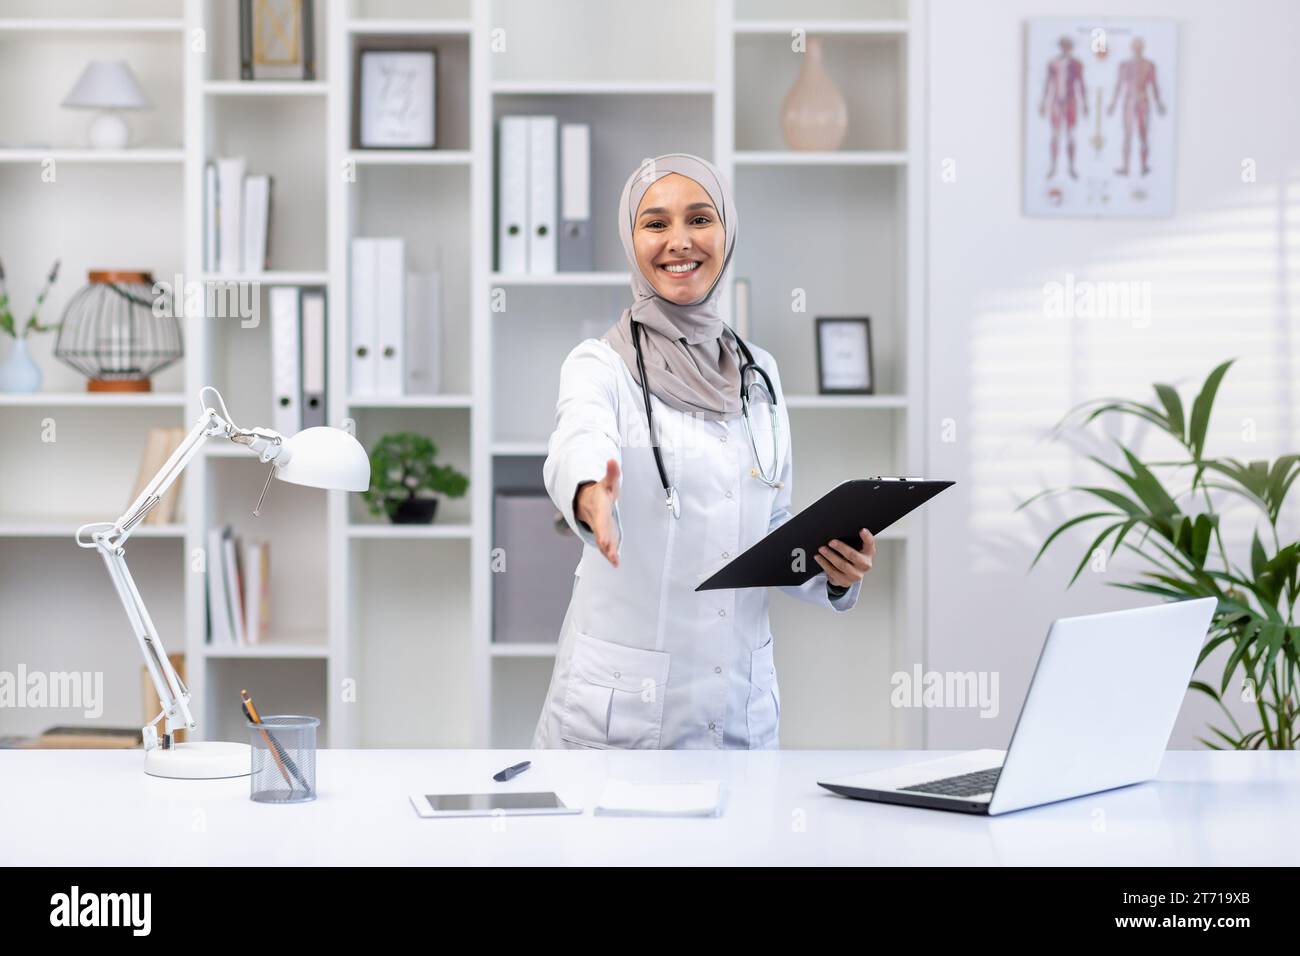 Portrait de femme médecin musulmane heureuse dans le hijab debout à table dans le bureau de l'hôpital, portant un manteau blanc, dossier dans les mains, étendant la main dans l'accueil, souriant et regardant la caméra. Banque D'Images